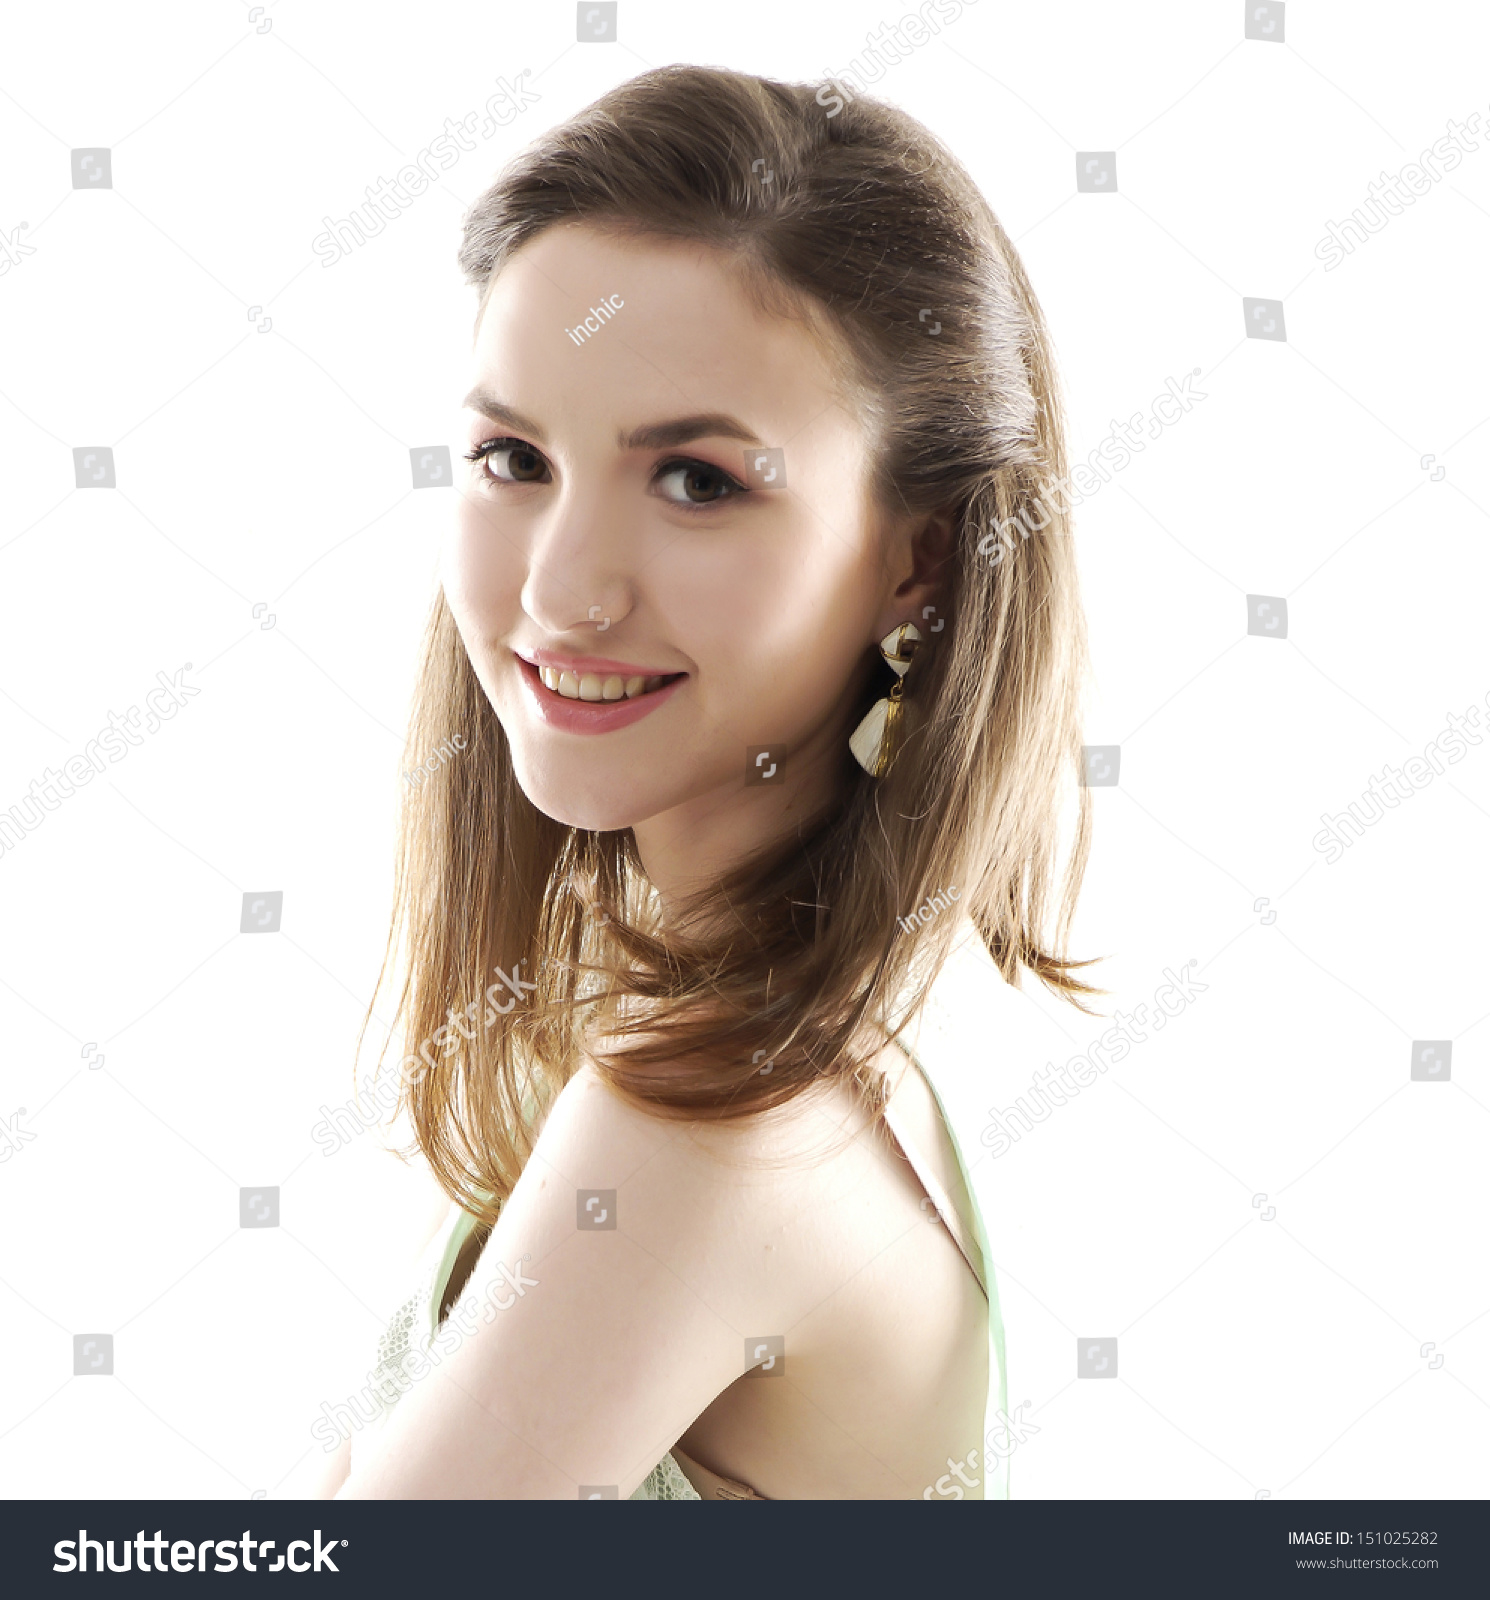 young woman smiling . Studio shot #151025282